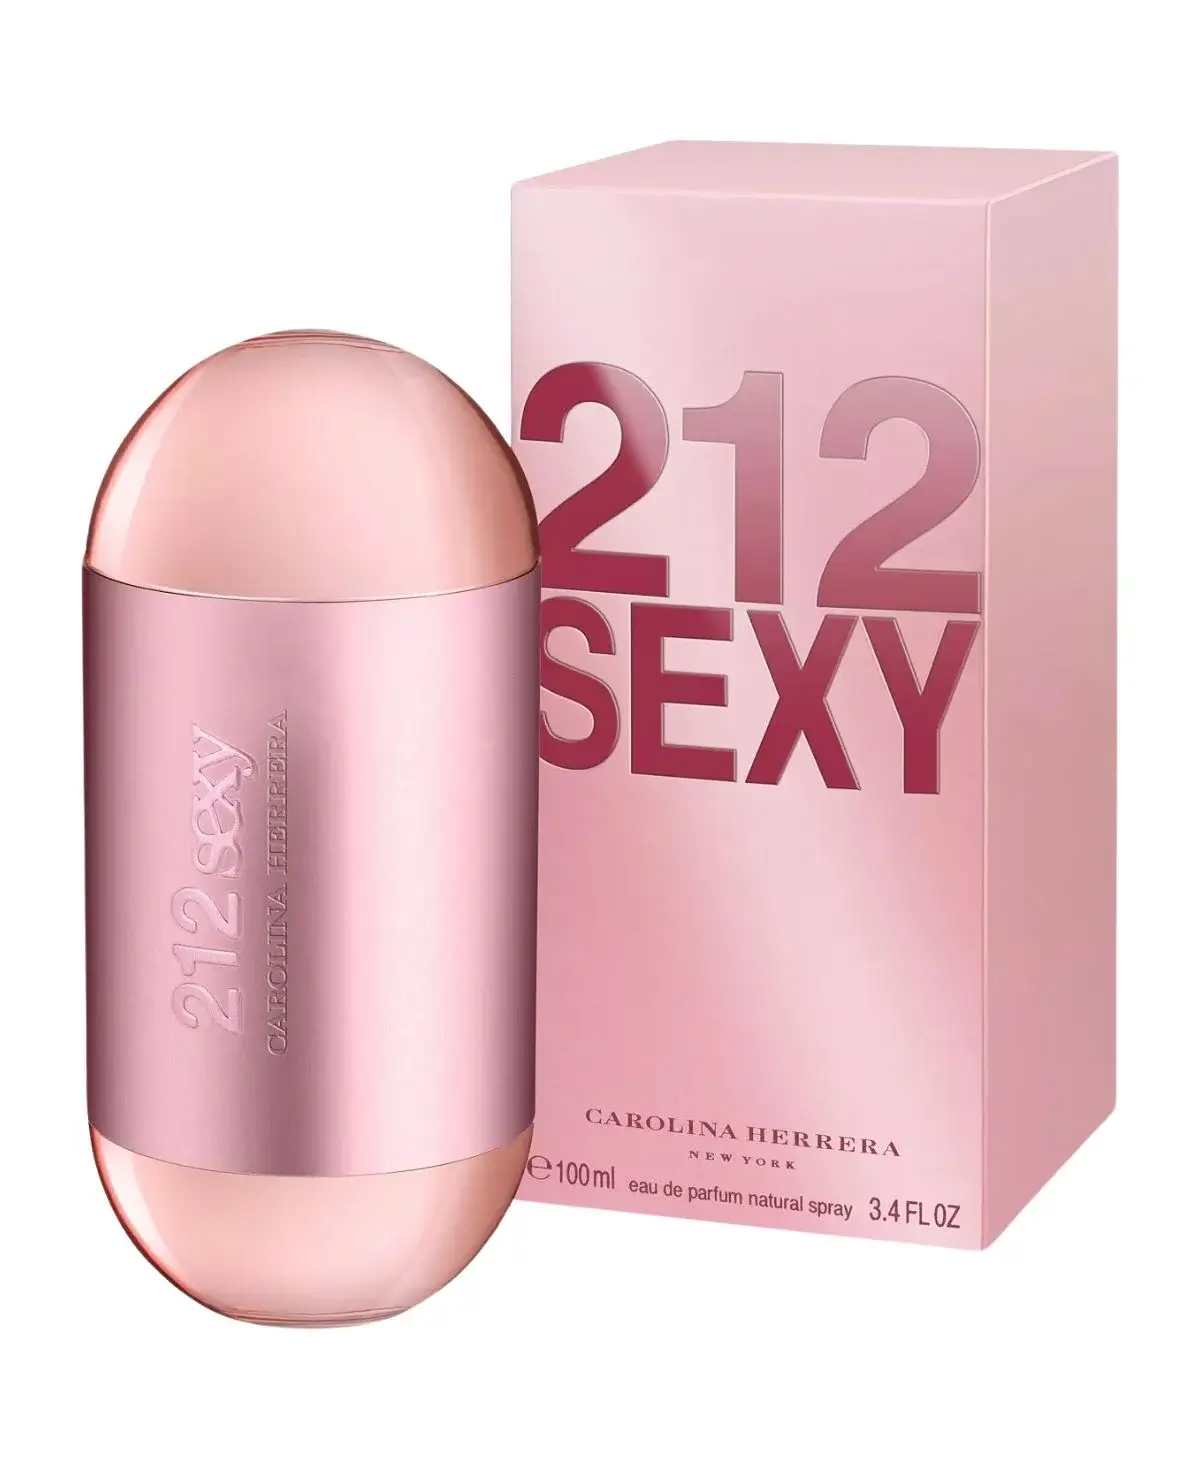 Carolina Herrera 212 Sexy for Women Eau de Parfum (EDP) Spray 3.4 oz (100 ml) 8411061865439